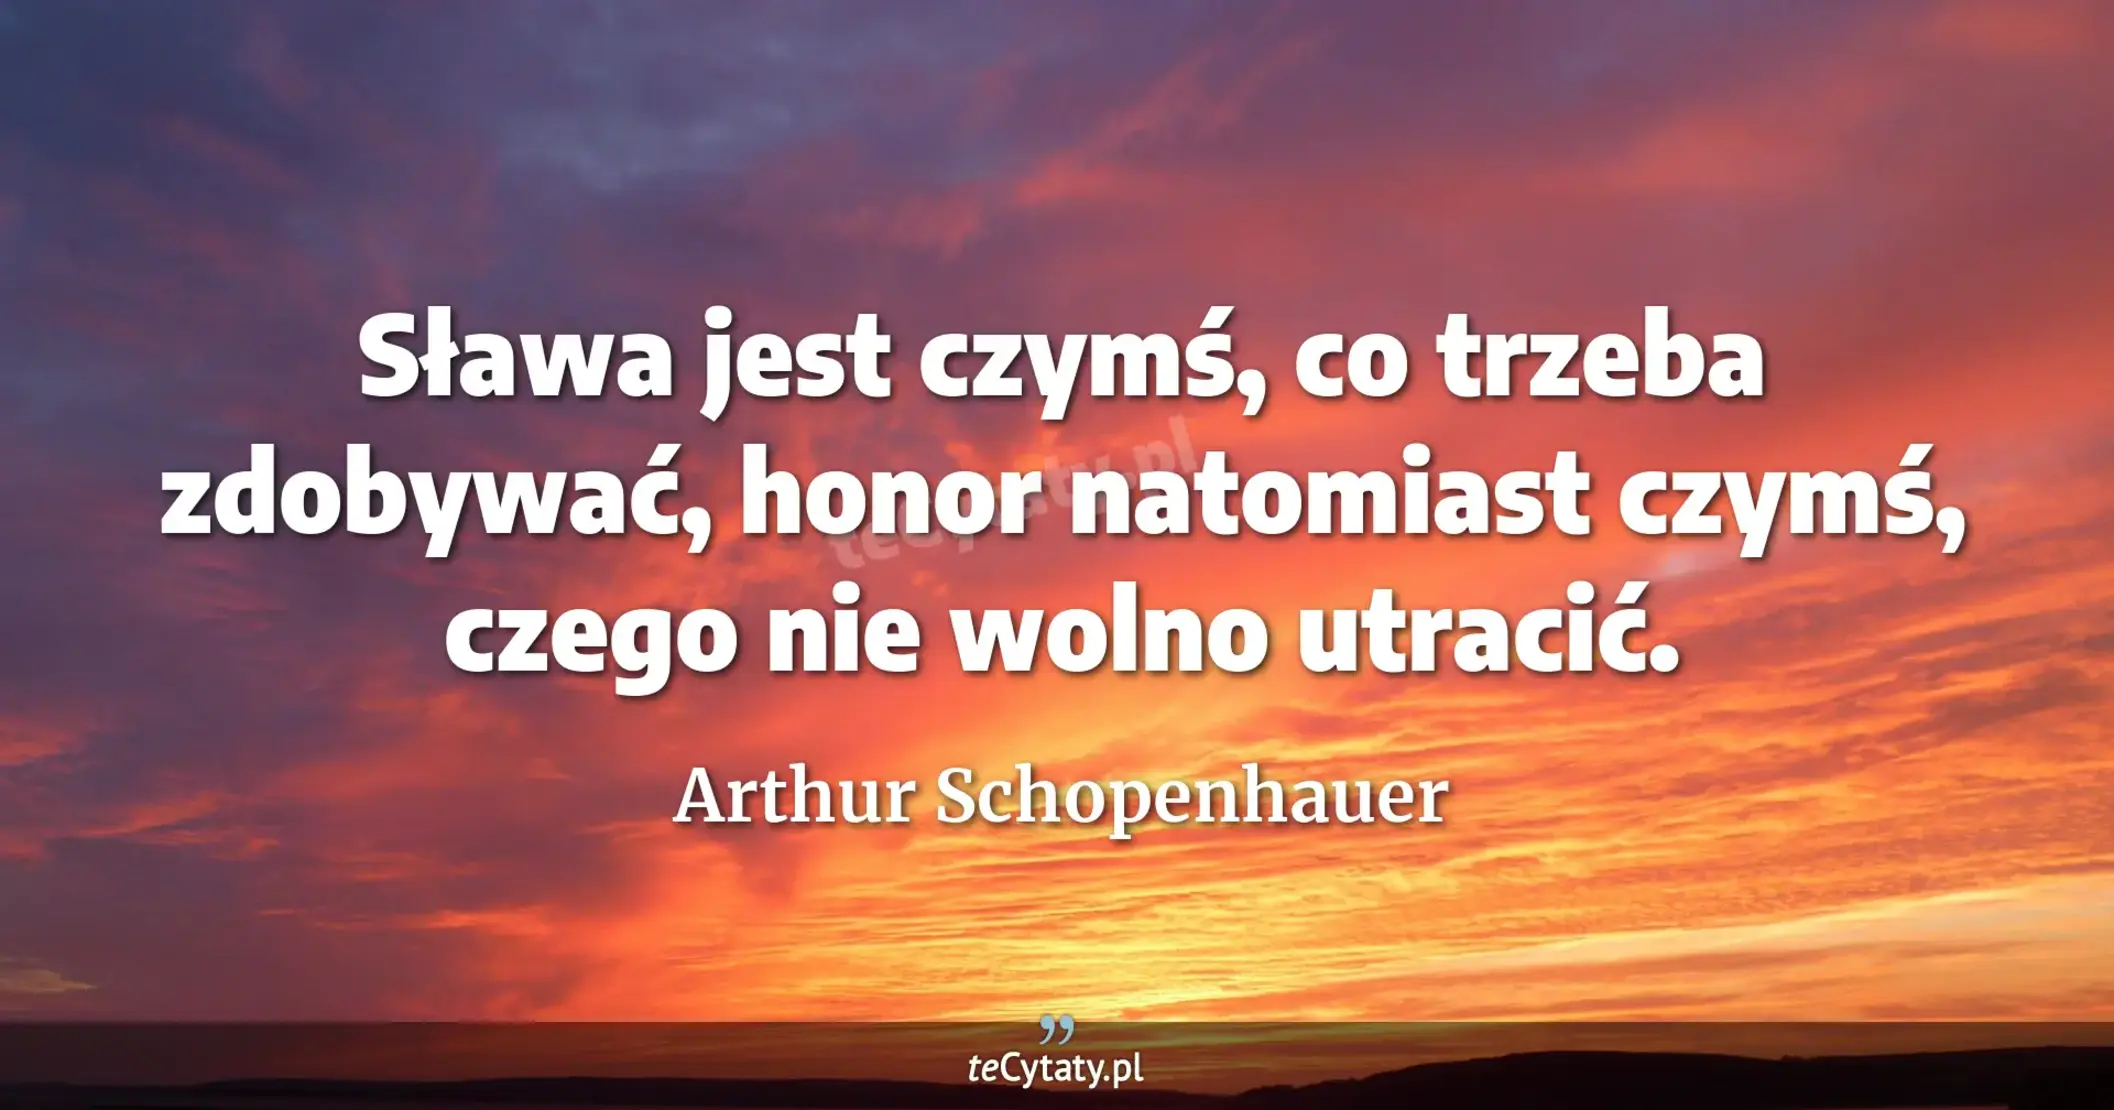 Sława jest czymś, co trzeba zdobywać, honor natomiast czymś, czego nie wolno utracić. - Arthur Schopenhauer